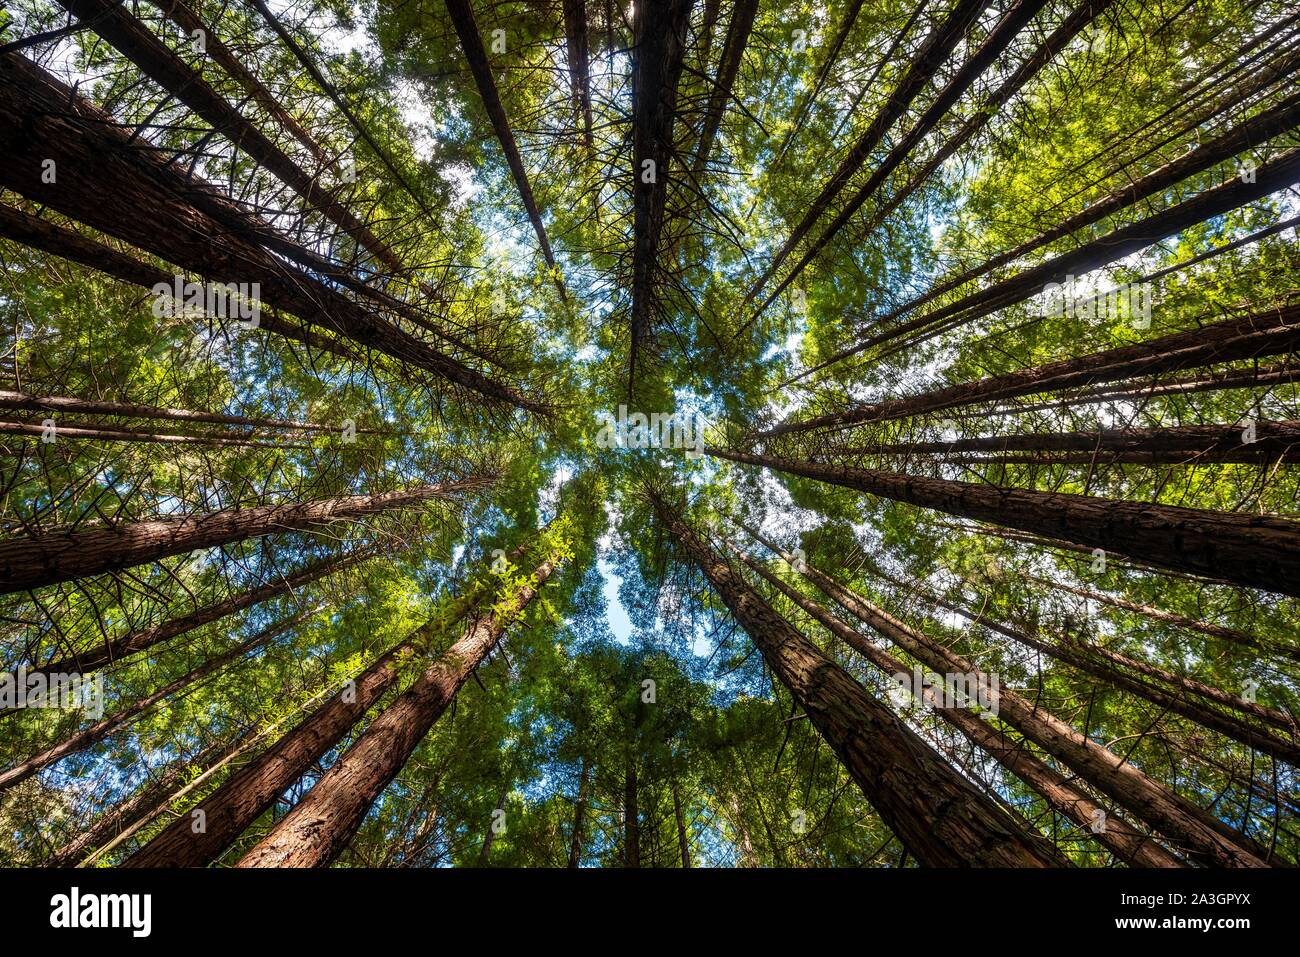 Vue de dessous dans la cime des arbres, forêt Redwood, Sequoia sempervirens (Sequoia sempervirens), la forêt de Whakarewarewa, Rotorua, île du Nord, nouveau Banque D'Images